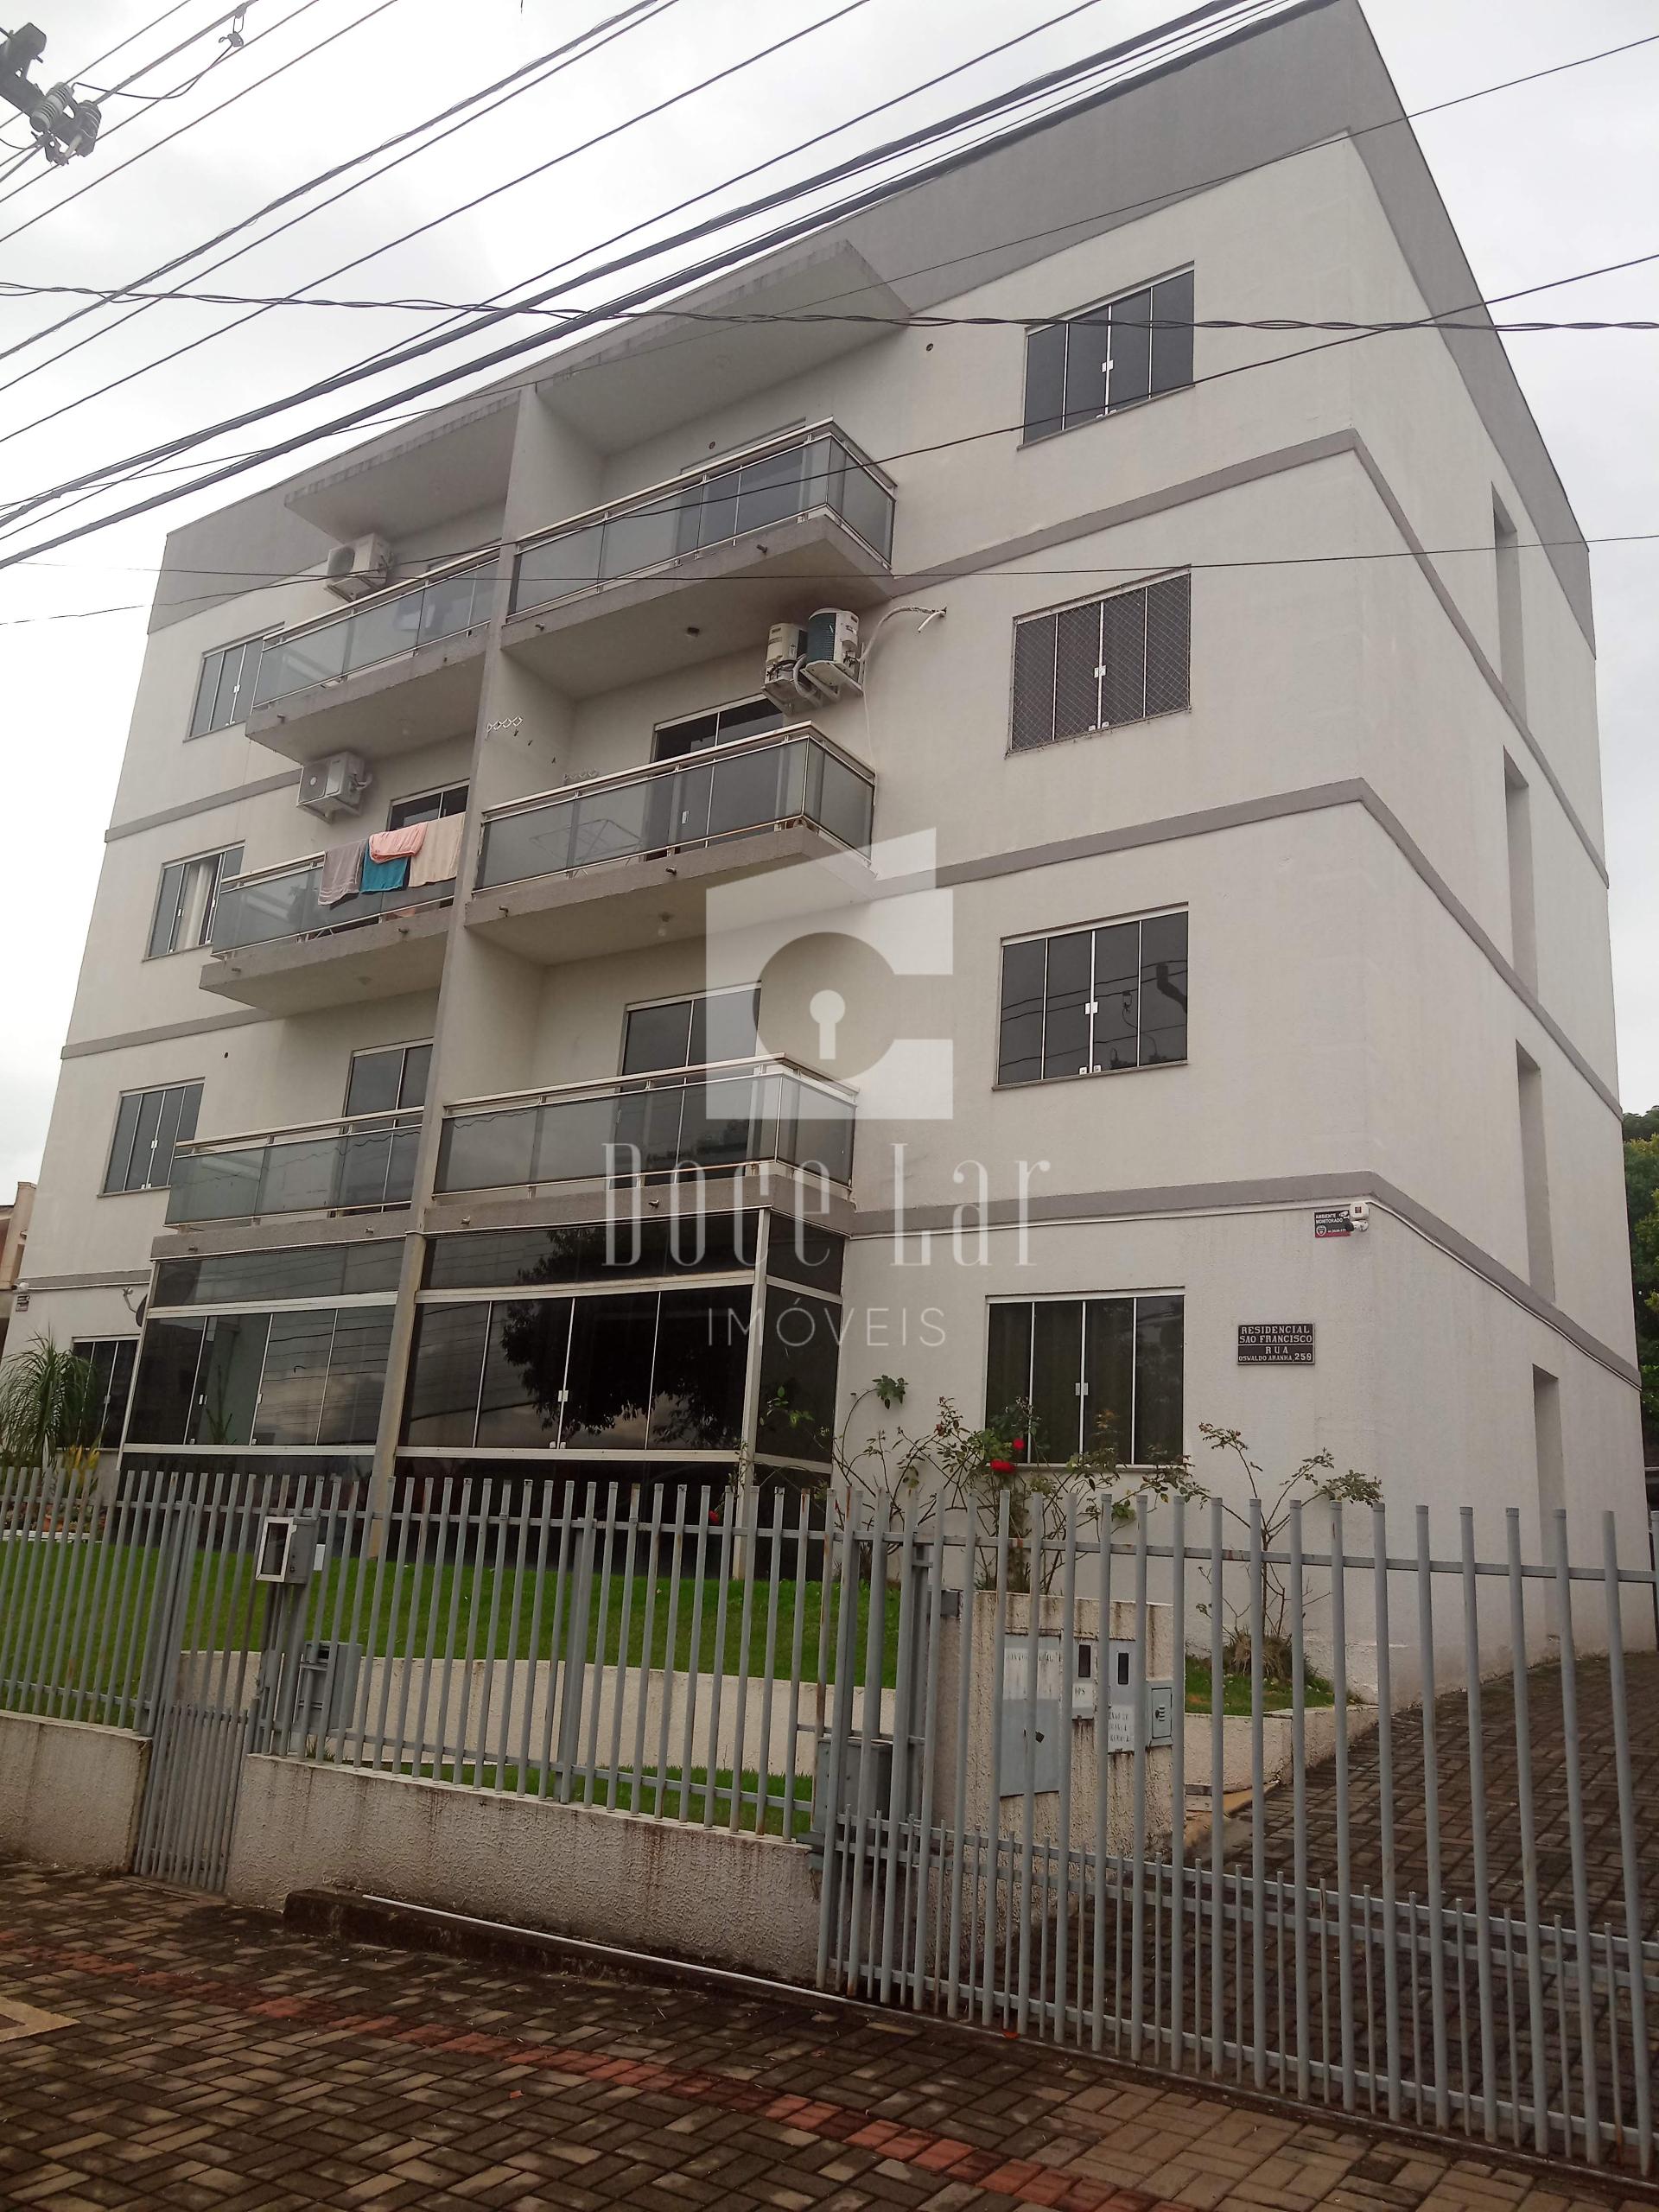 Apartamento para venda, Bairro São Francisco de Assis, DOIS VIZINHOS - PR